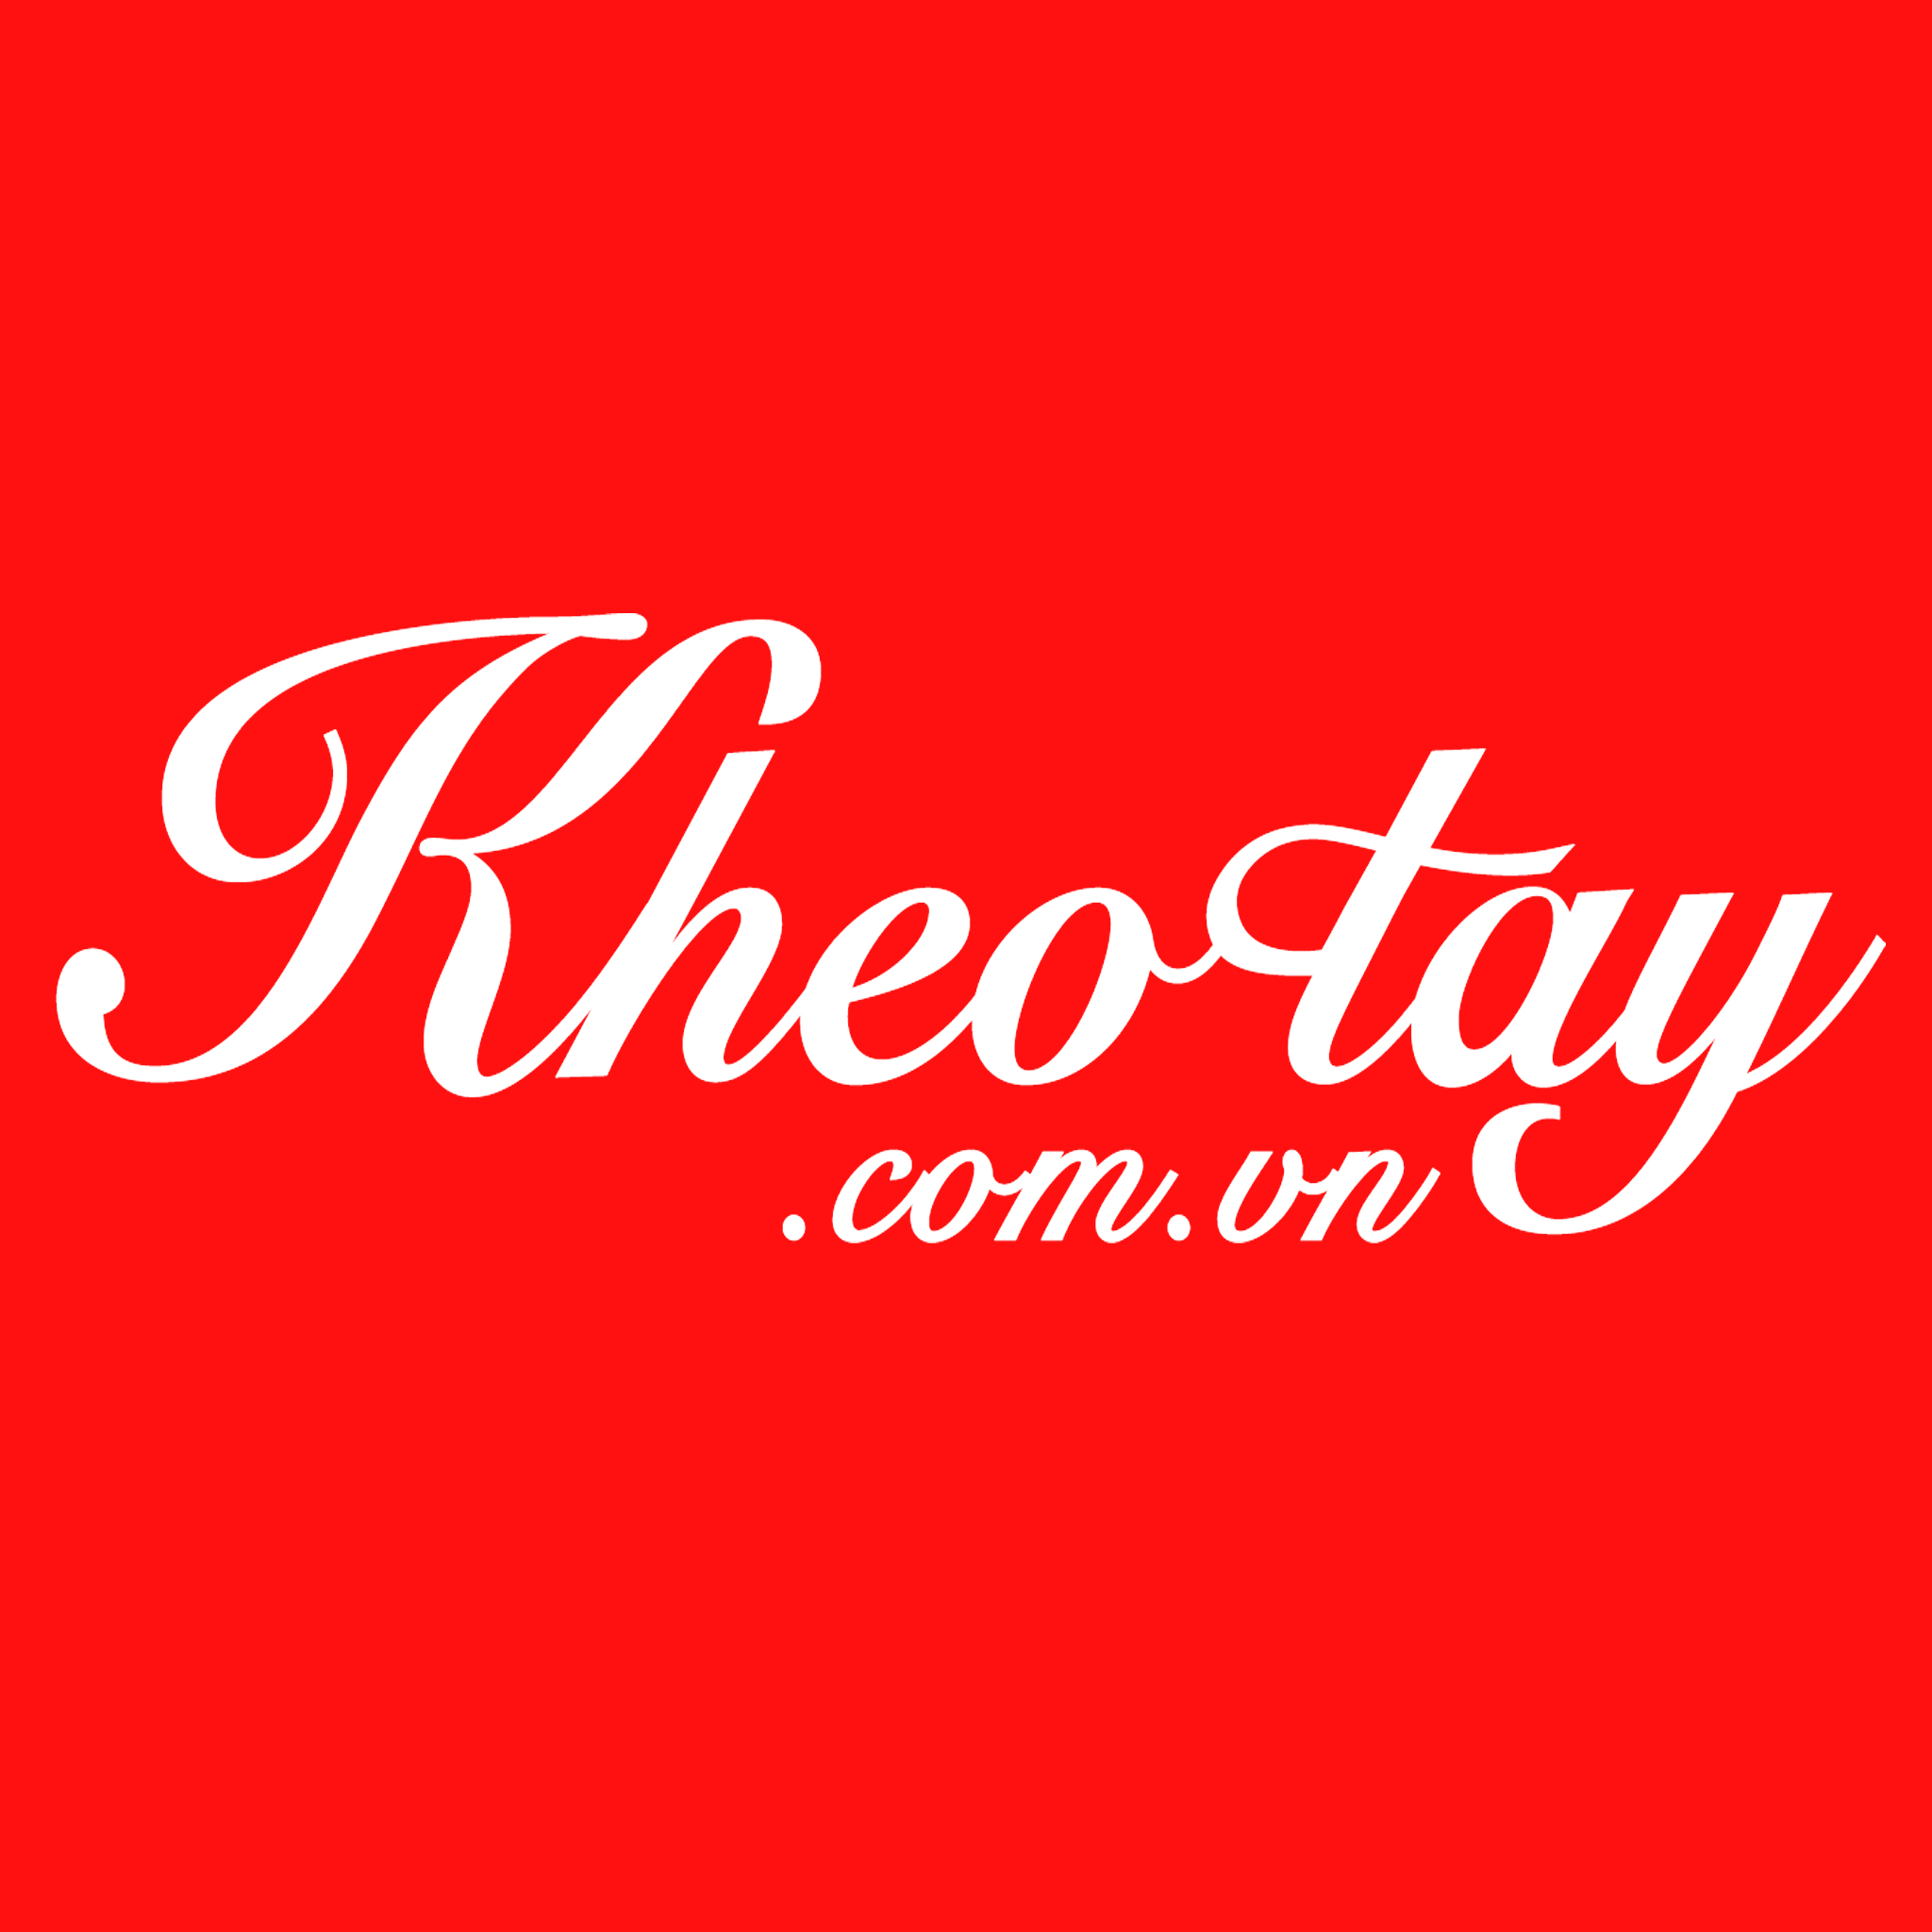 Kheotay